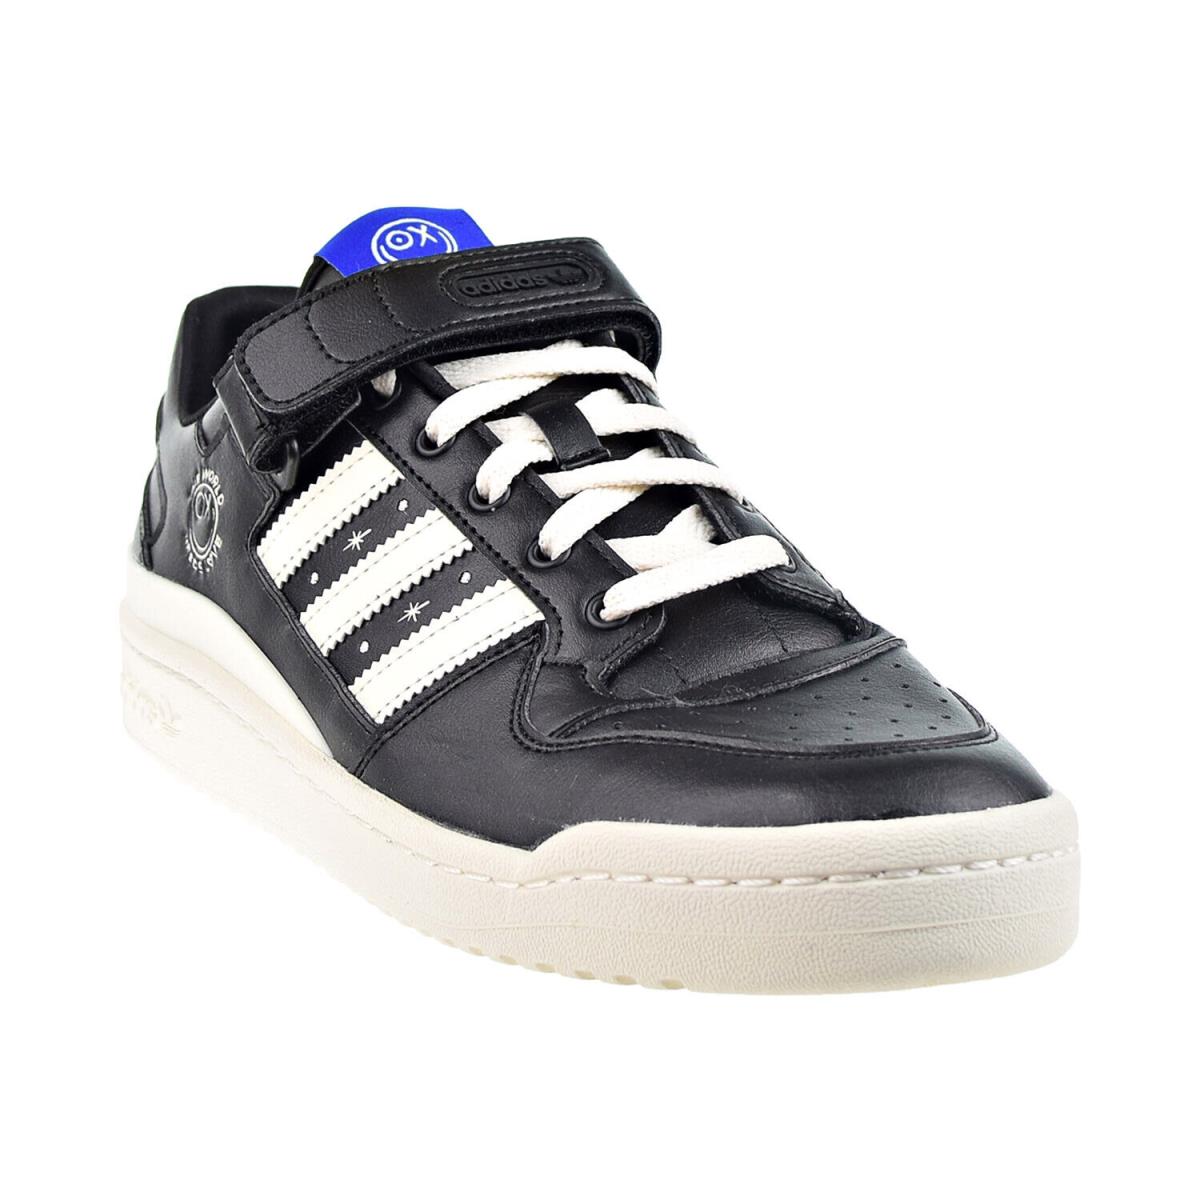 Adidas Forum Low Andr Saraiva Men`s Shoes Black-cream-white GZ2205 - Core Black-Cream White